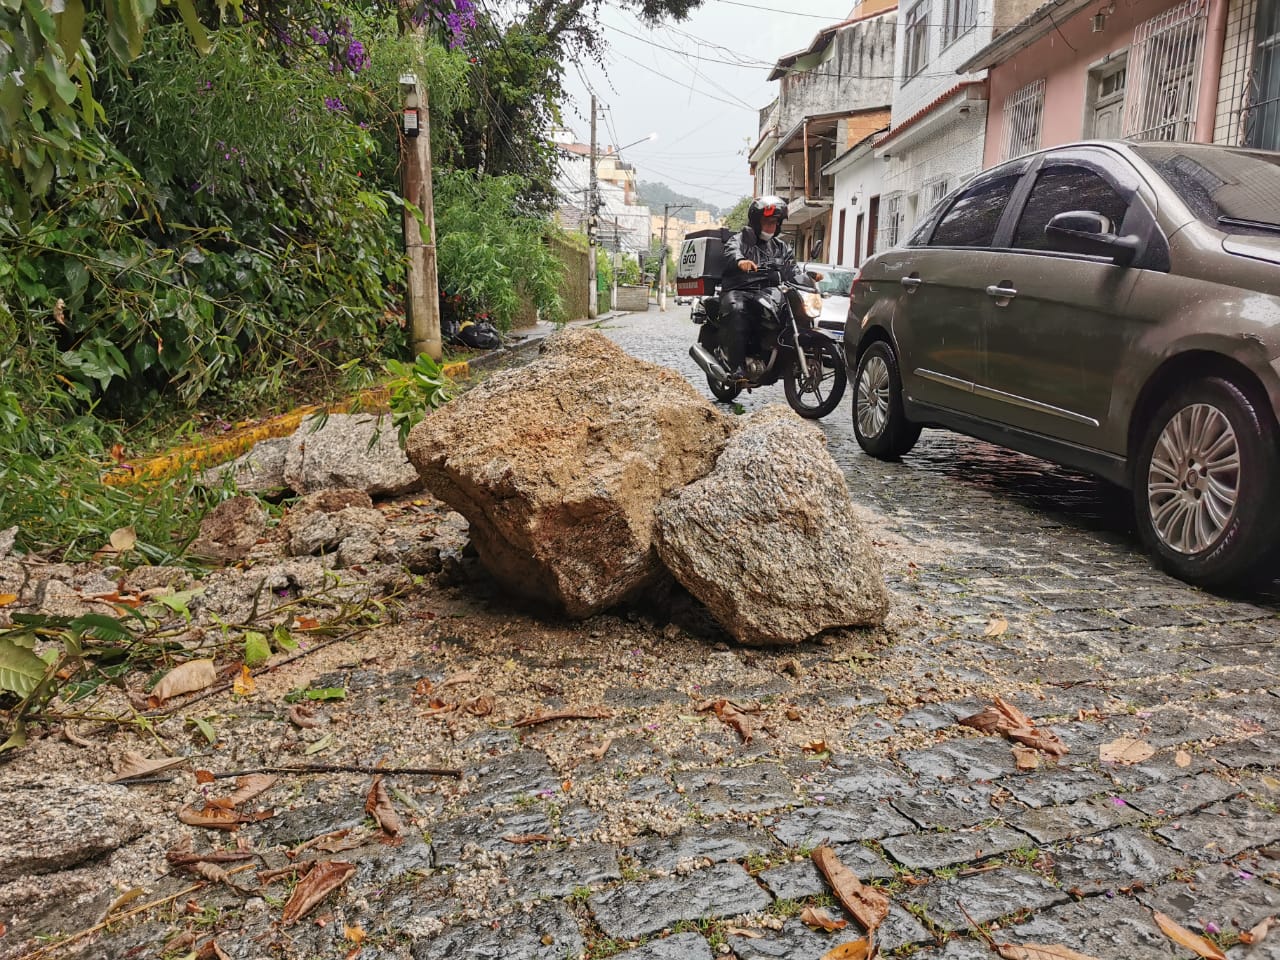 Pedras que rolaram de um encosta na Rua Arnaldo Bittencourt (Fotos: Carlos Mafort)